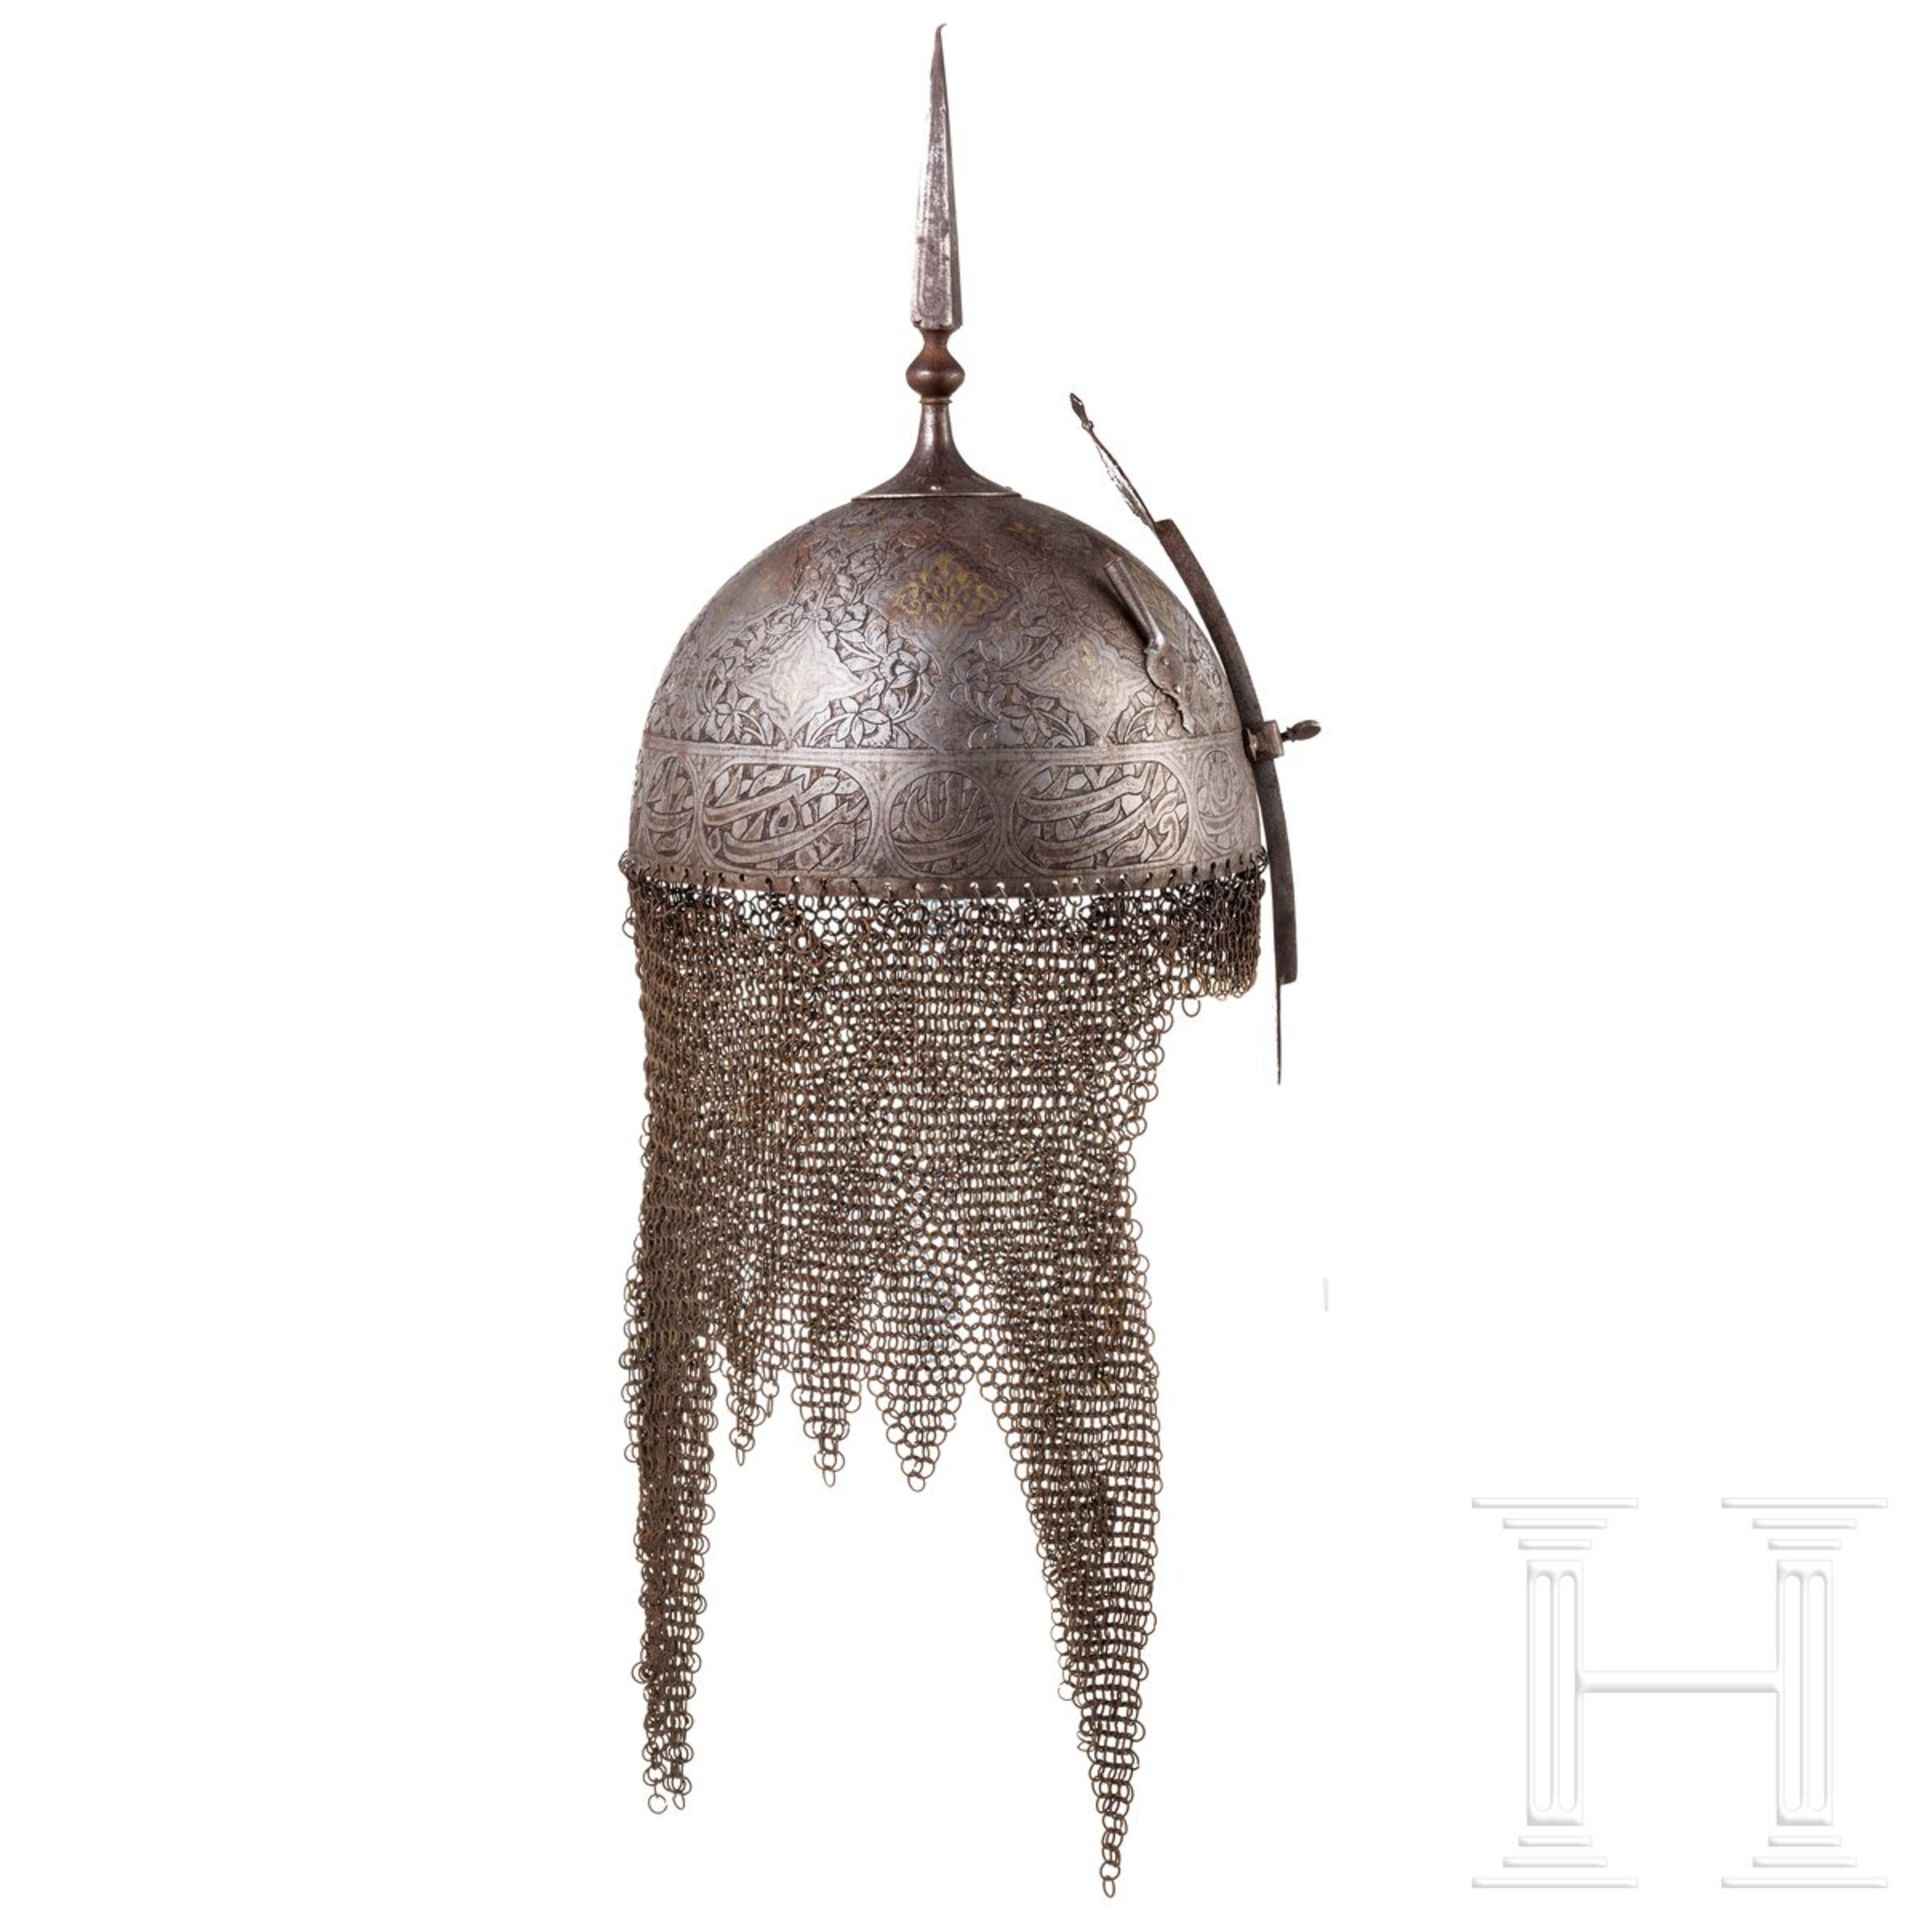 Geätzter Helm (Kulah Khud), Persien, 19. Jhdt. - Image 2 of 6